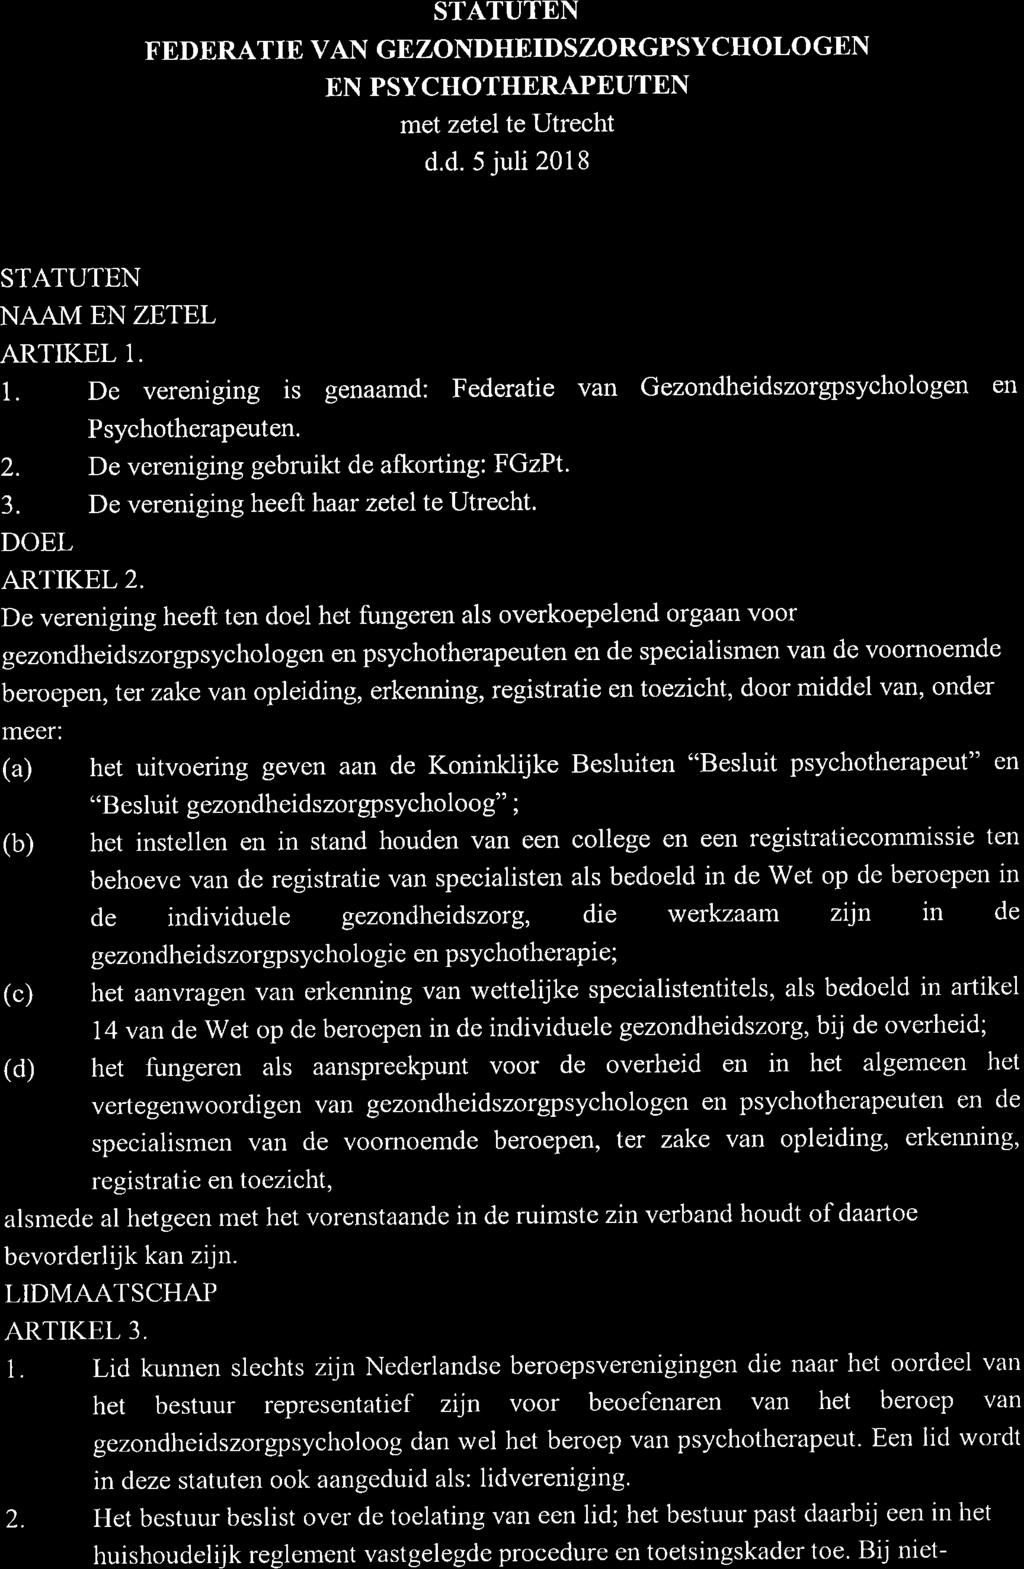 STATUTEN FEDBRATIE VAN GBZONDHEIDSZORGPSYCHOLOGEN EN PSYCHOTHERAPEUTEN met zetel te Utrecht d.d. 5 juli 2018 STATUTEN NAAM EN ZETEL ARTIKEL 1.